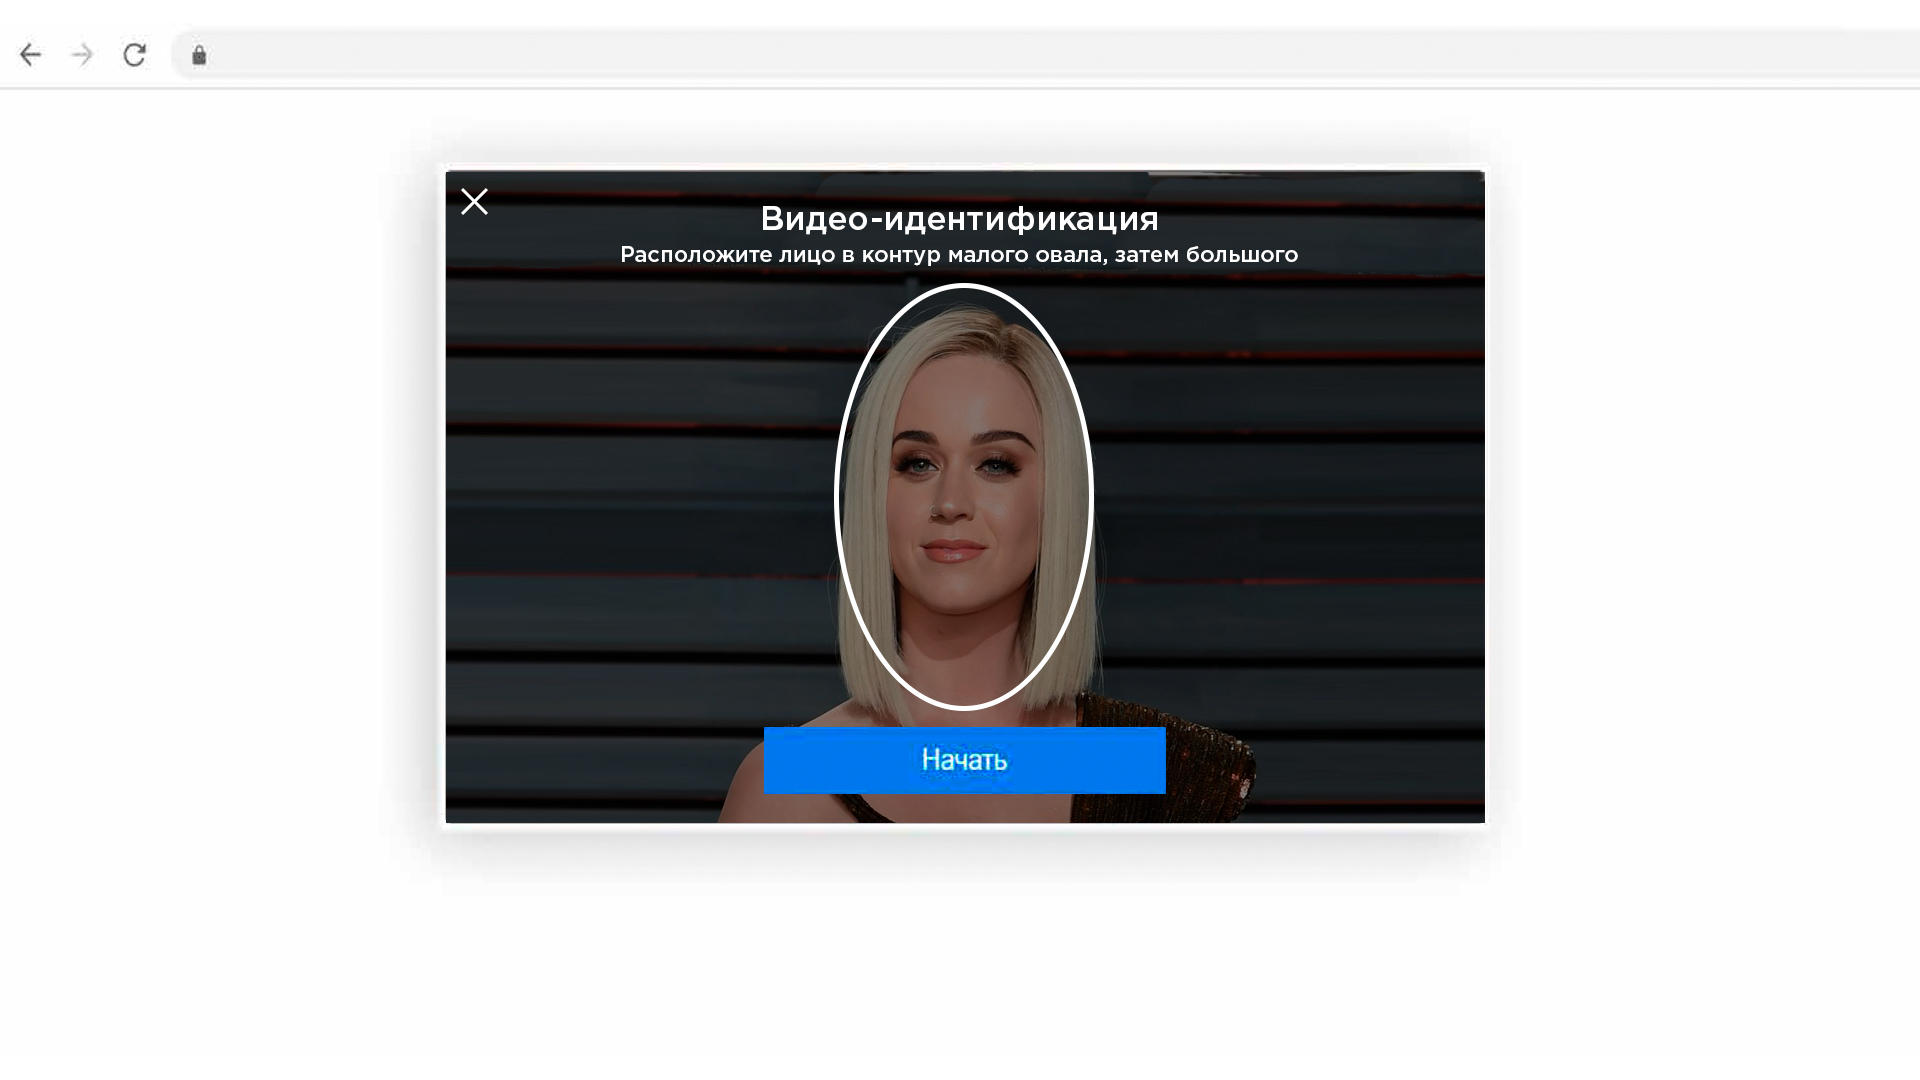 Физическое лицо - Руководство пользователя Национального удостоверяющего центра Республики Казахстан